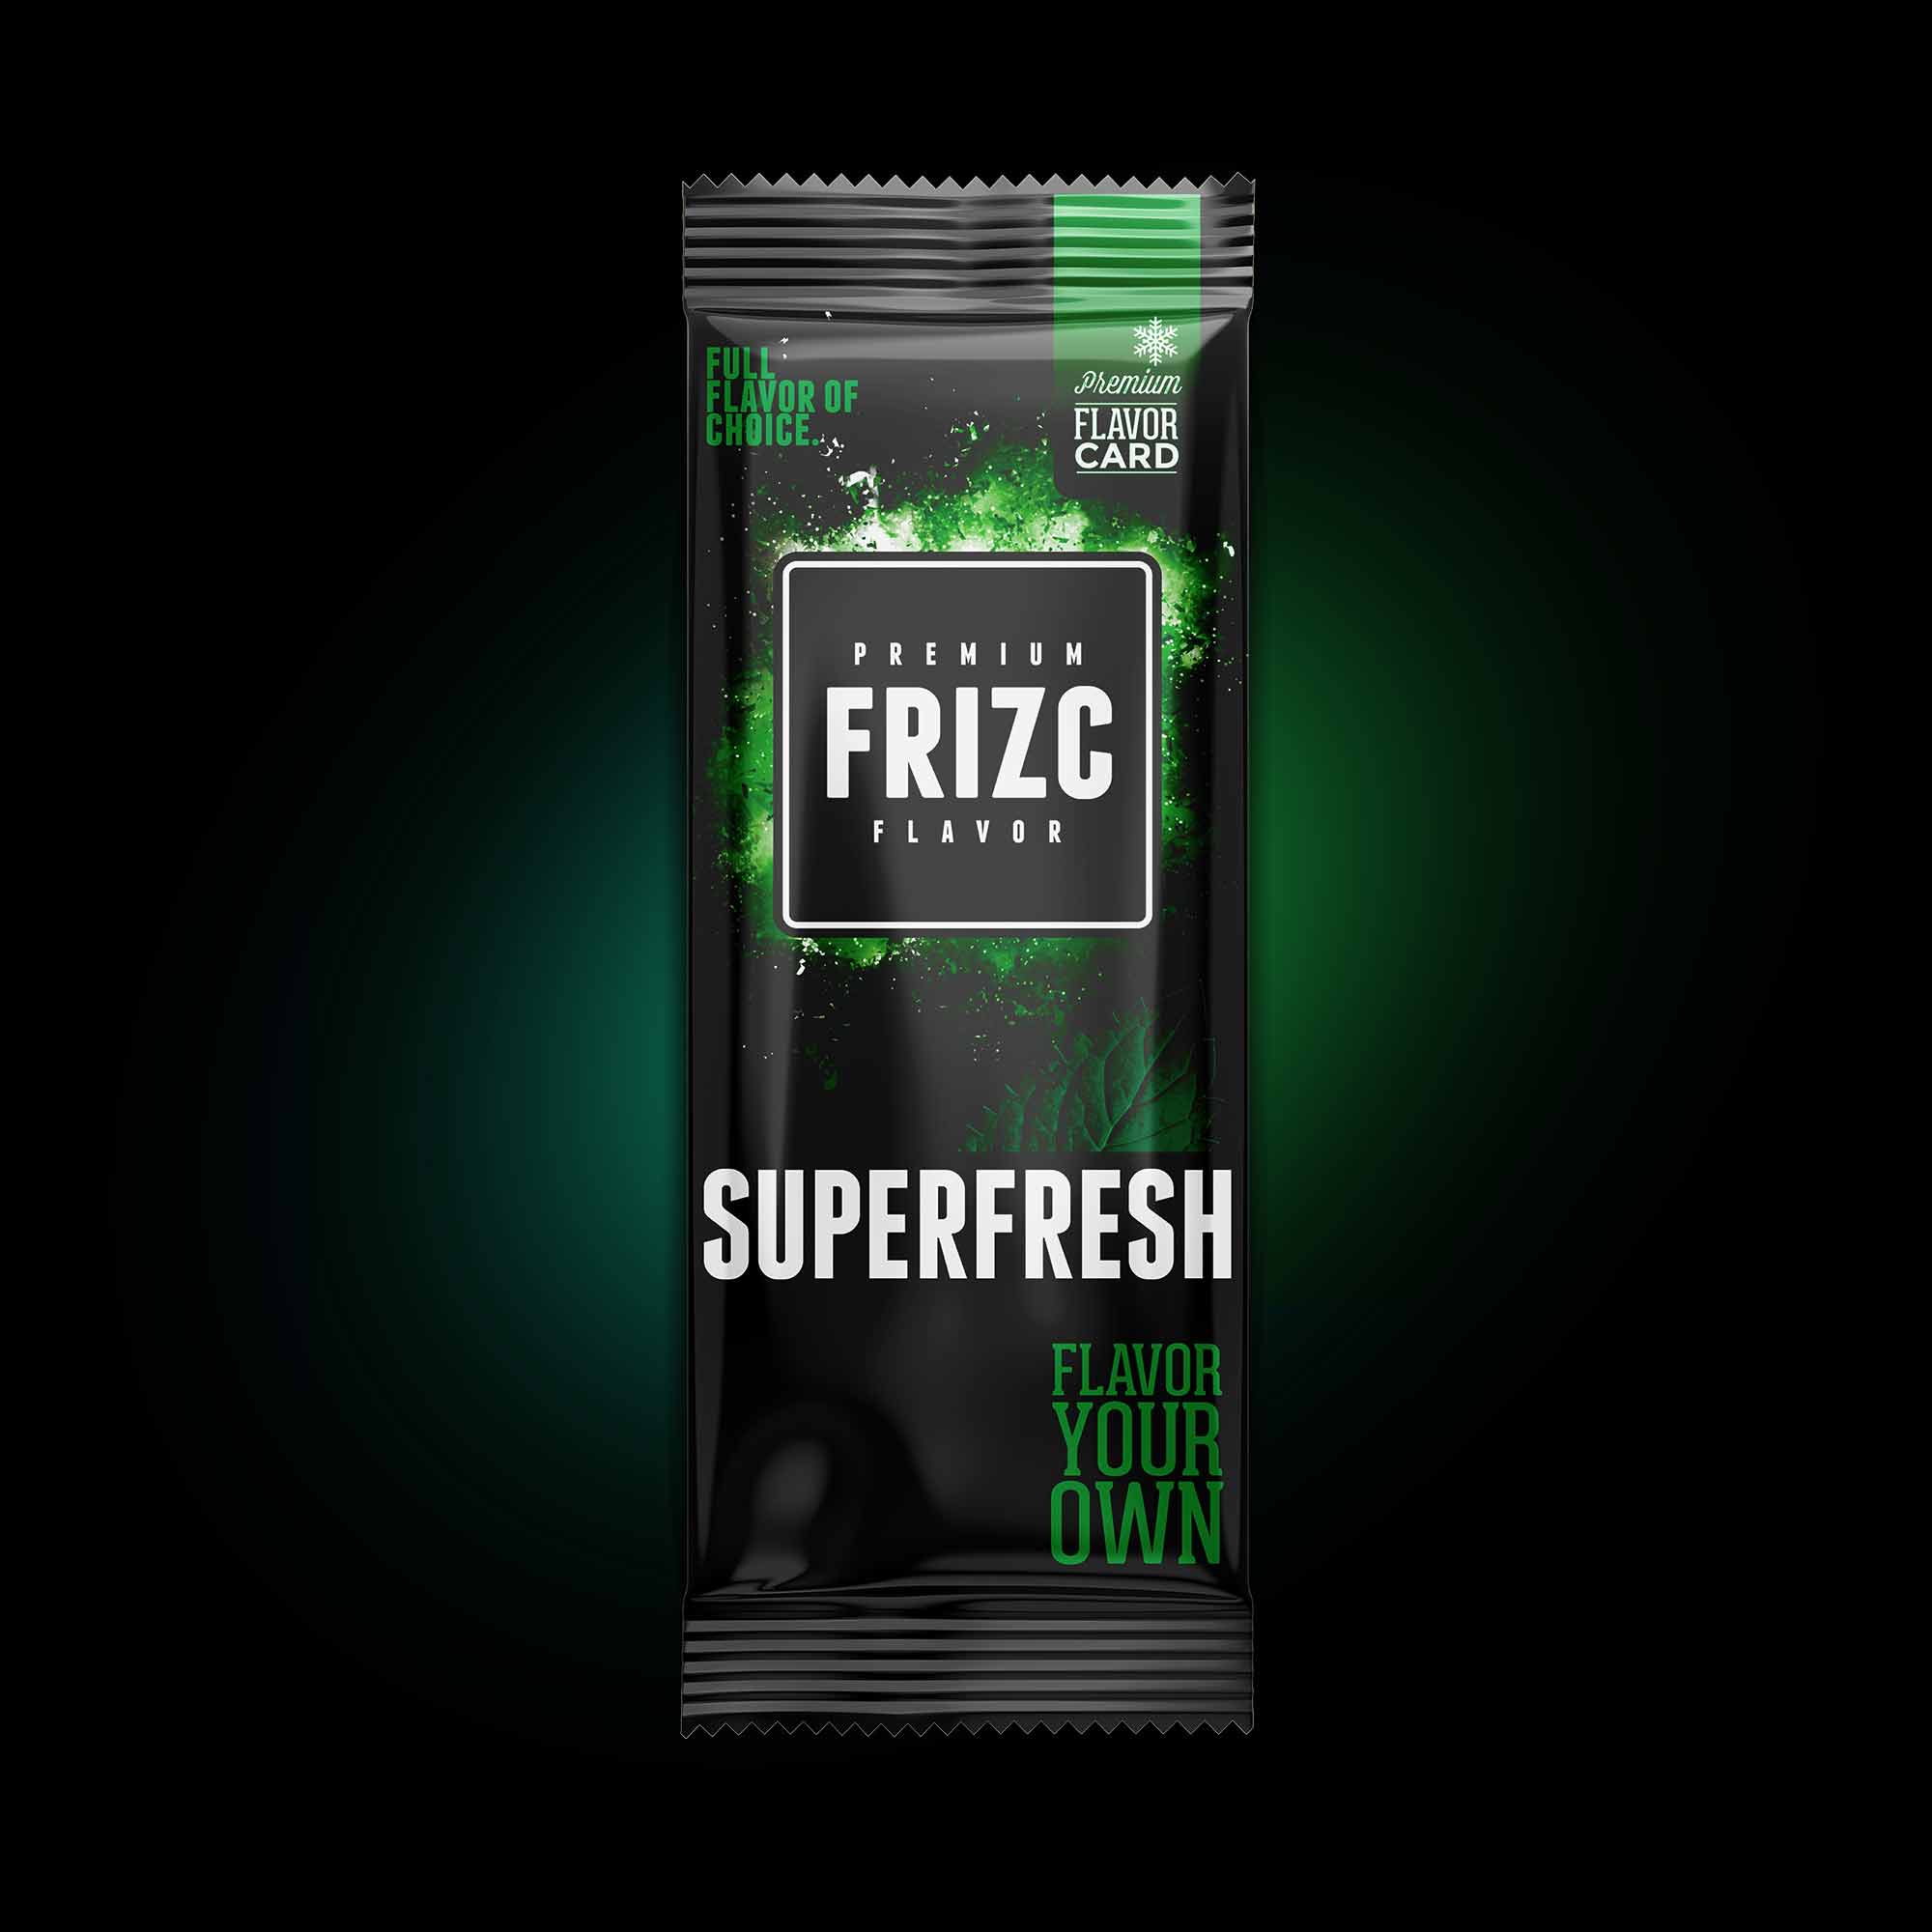 Superfresh 25 pack